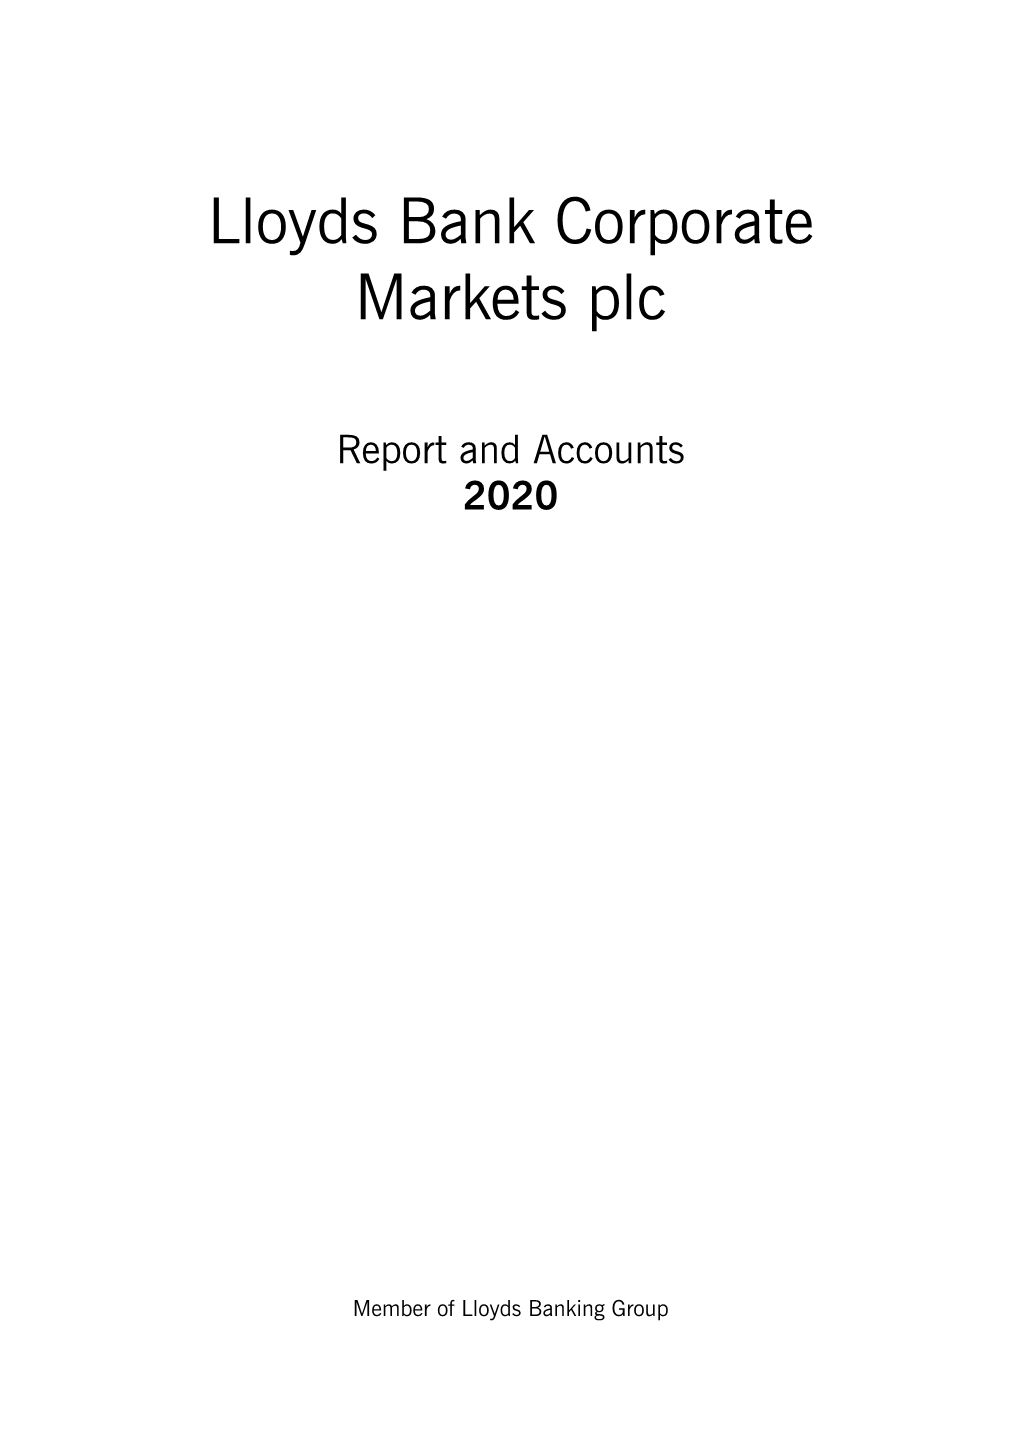 2020-Lbcm-Annual-Report.Pdf